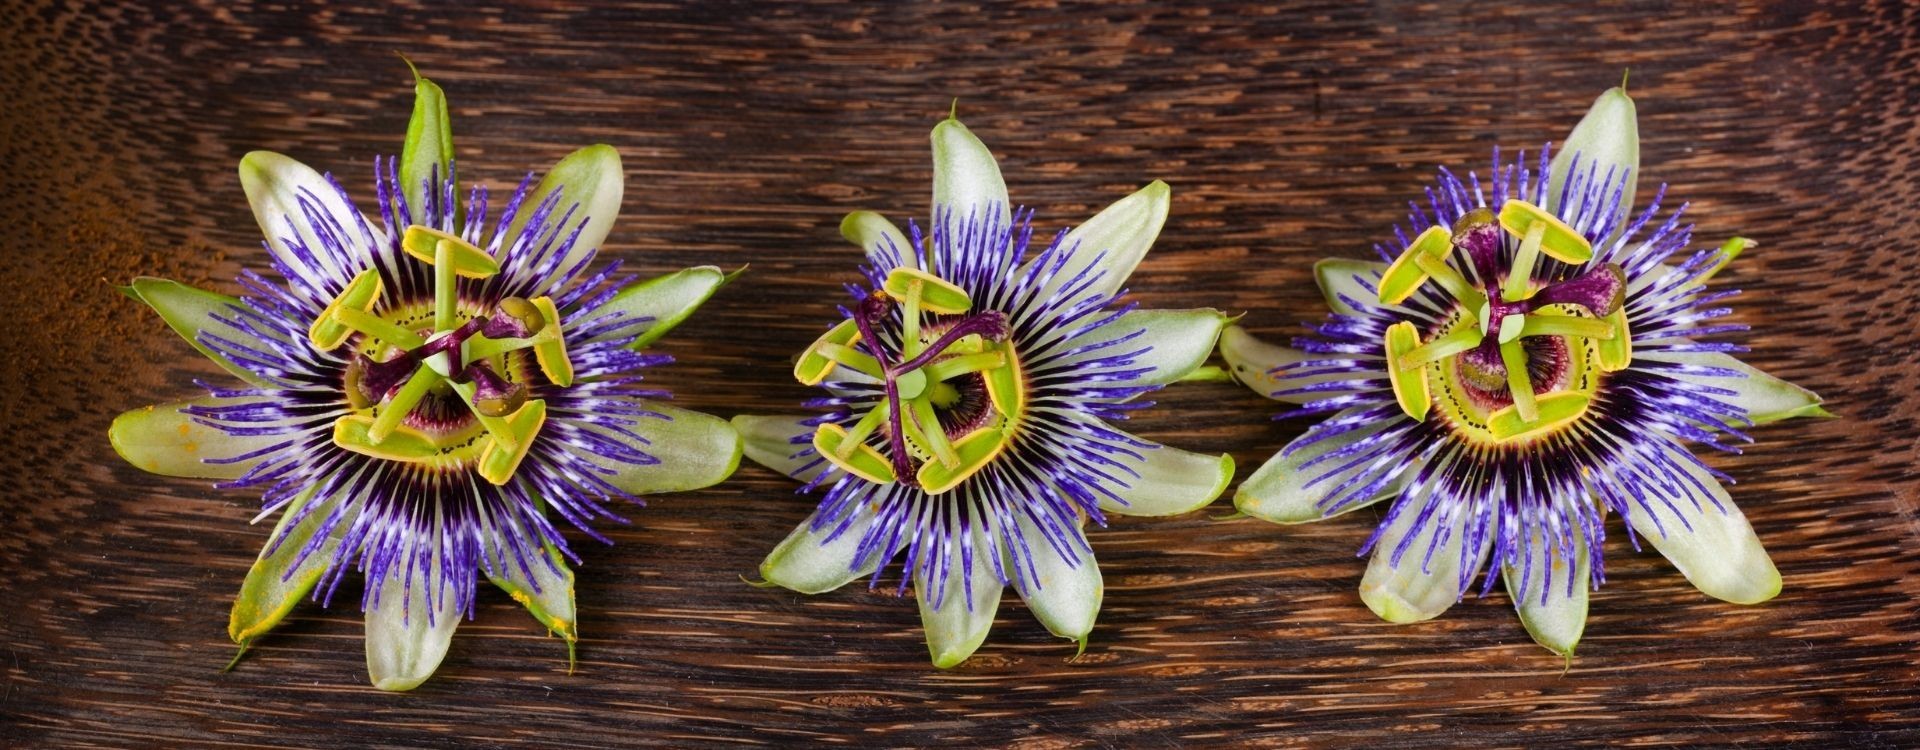 Passiflora, um relaxante natural cheio de Benefícios